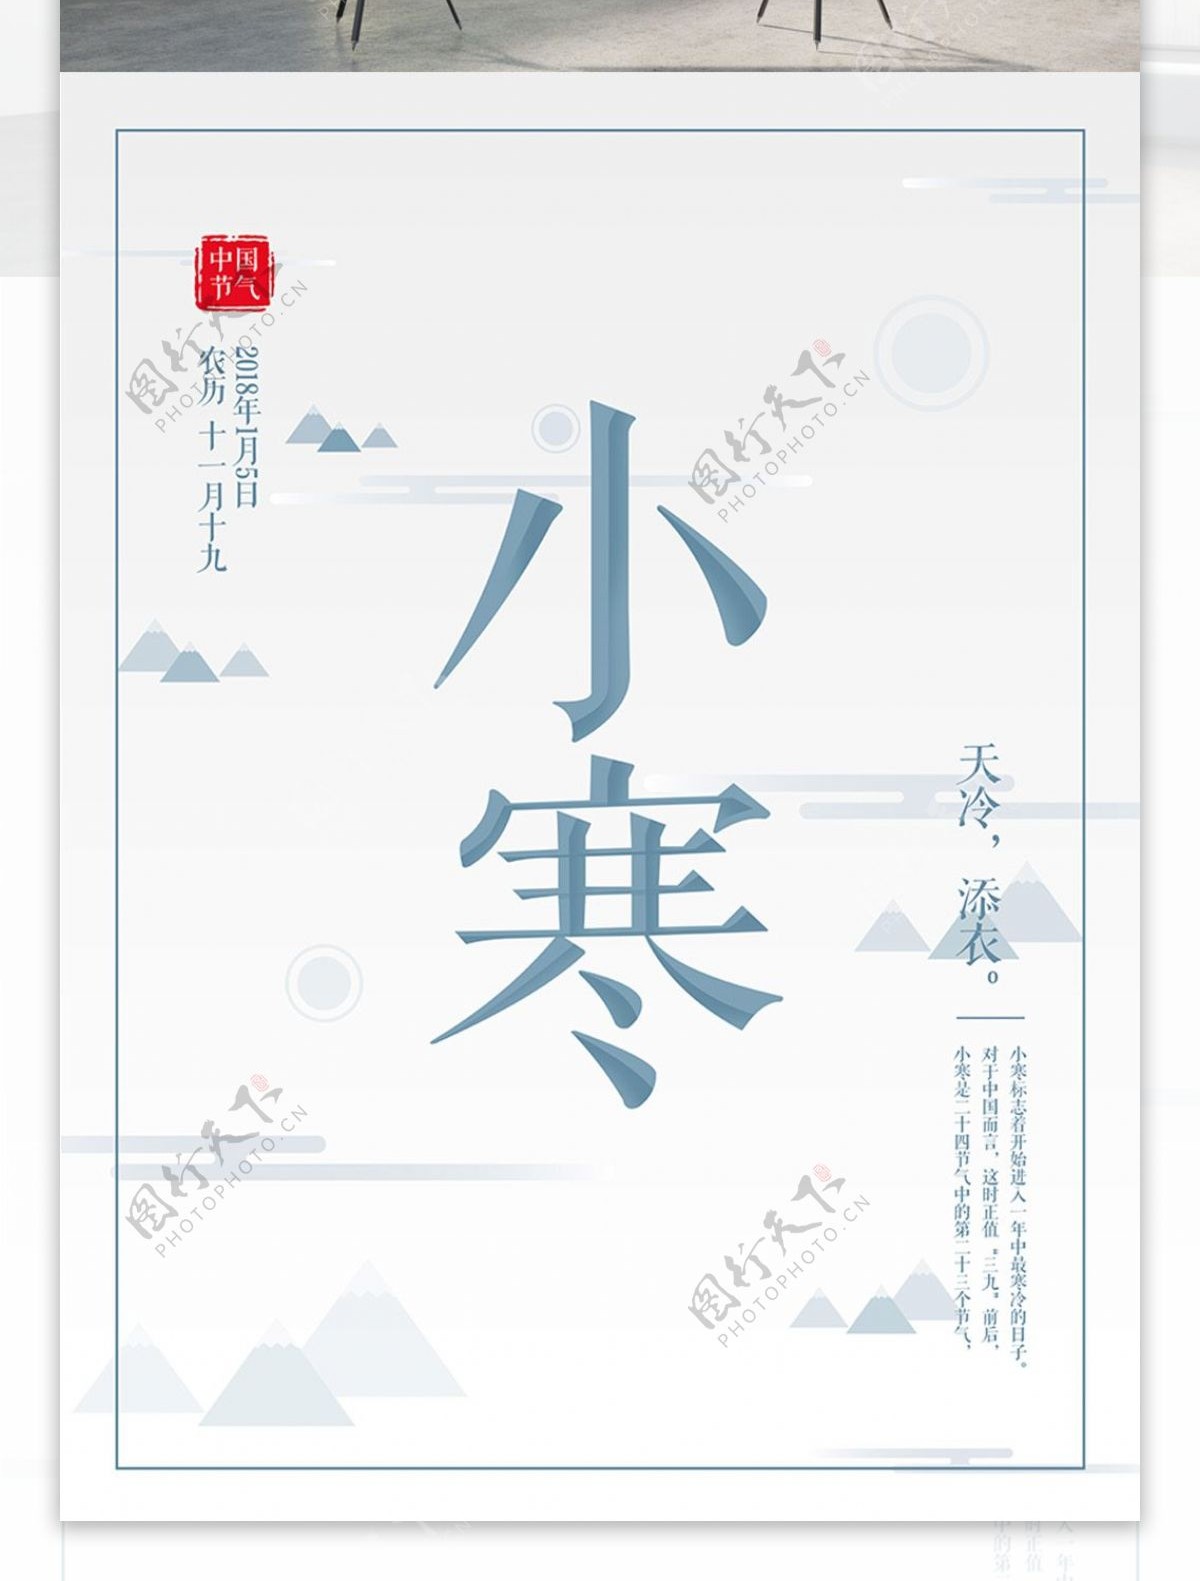 原创鼠绘简约灰蓝色小寒中国节气节日海报